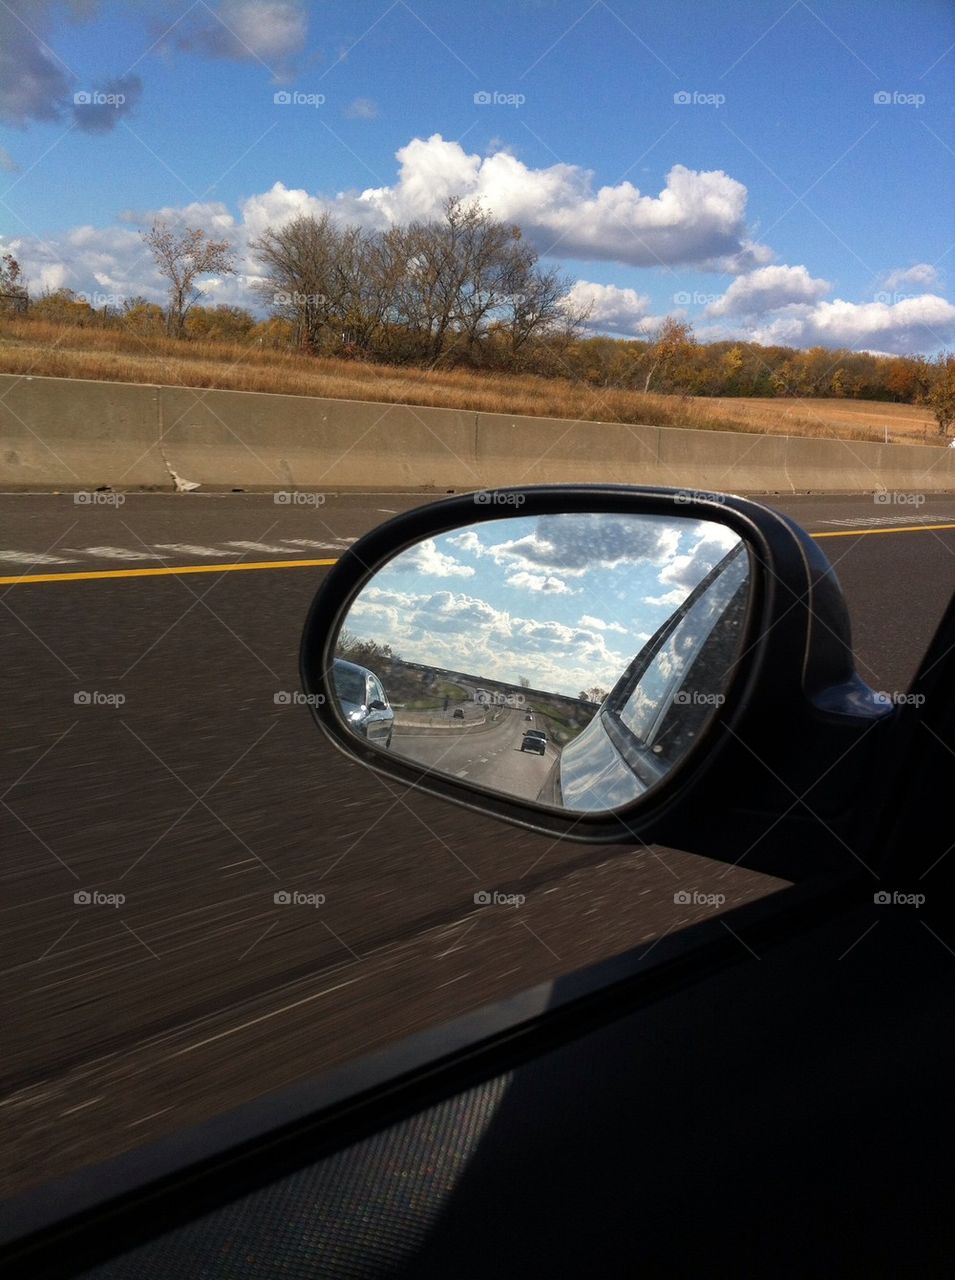 Sky in rear view mirror